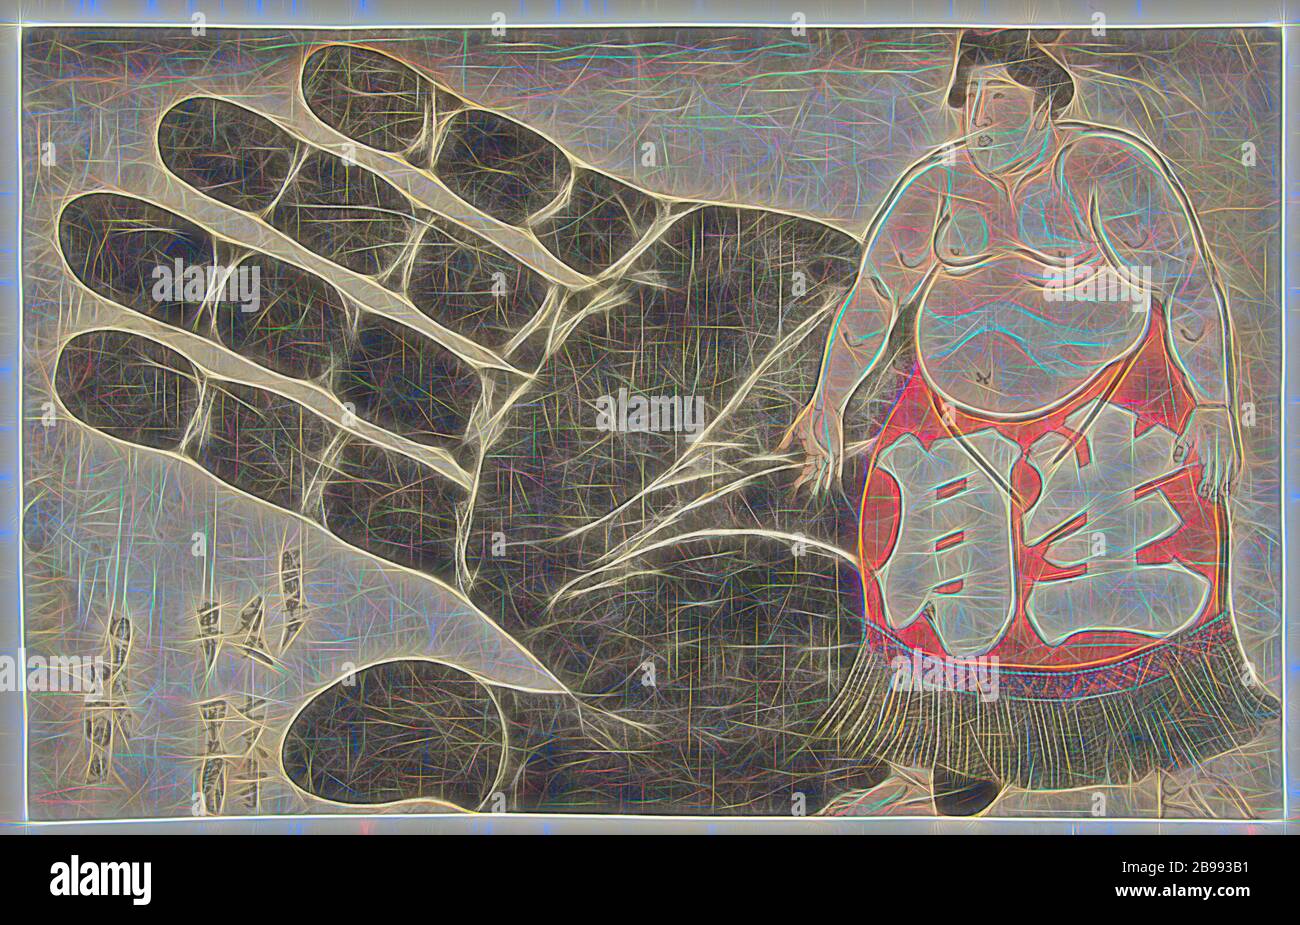 Ikezuki Goatazaemon accanto ad una stampa della sua mano, il lottatore di sumo Ikezuki Goatazaemon, con torso nudo, raffigurato accanto ad una rappresentazione a grandezza naturale della sua mano. Il testo afferma che egli è venuto da Hirado, a Hizen, era lungo oltre due metri e pesava circa 140 chili. Bokashi viola lungo la parte superiore della stampa., Kunisada (i), Utagawa (citato sull'oggetto), Giappone, 1842 - 1846, carta, taglio a colori in legno, h 230 mm × w 362 mm, Reimagined by Gibon, disegno di calda allegra luce e luminosità irradiante. Arte classica reinventata con un tocco moderno. Fotografia ispirata al futurismo, l'embracina Foto Stock